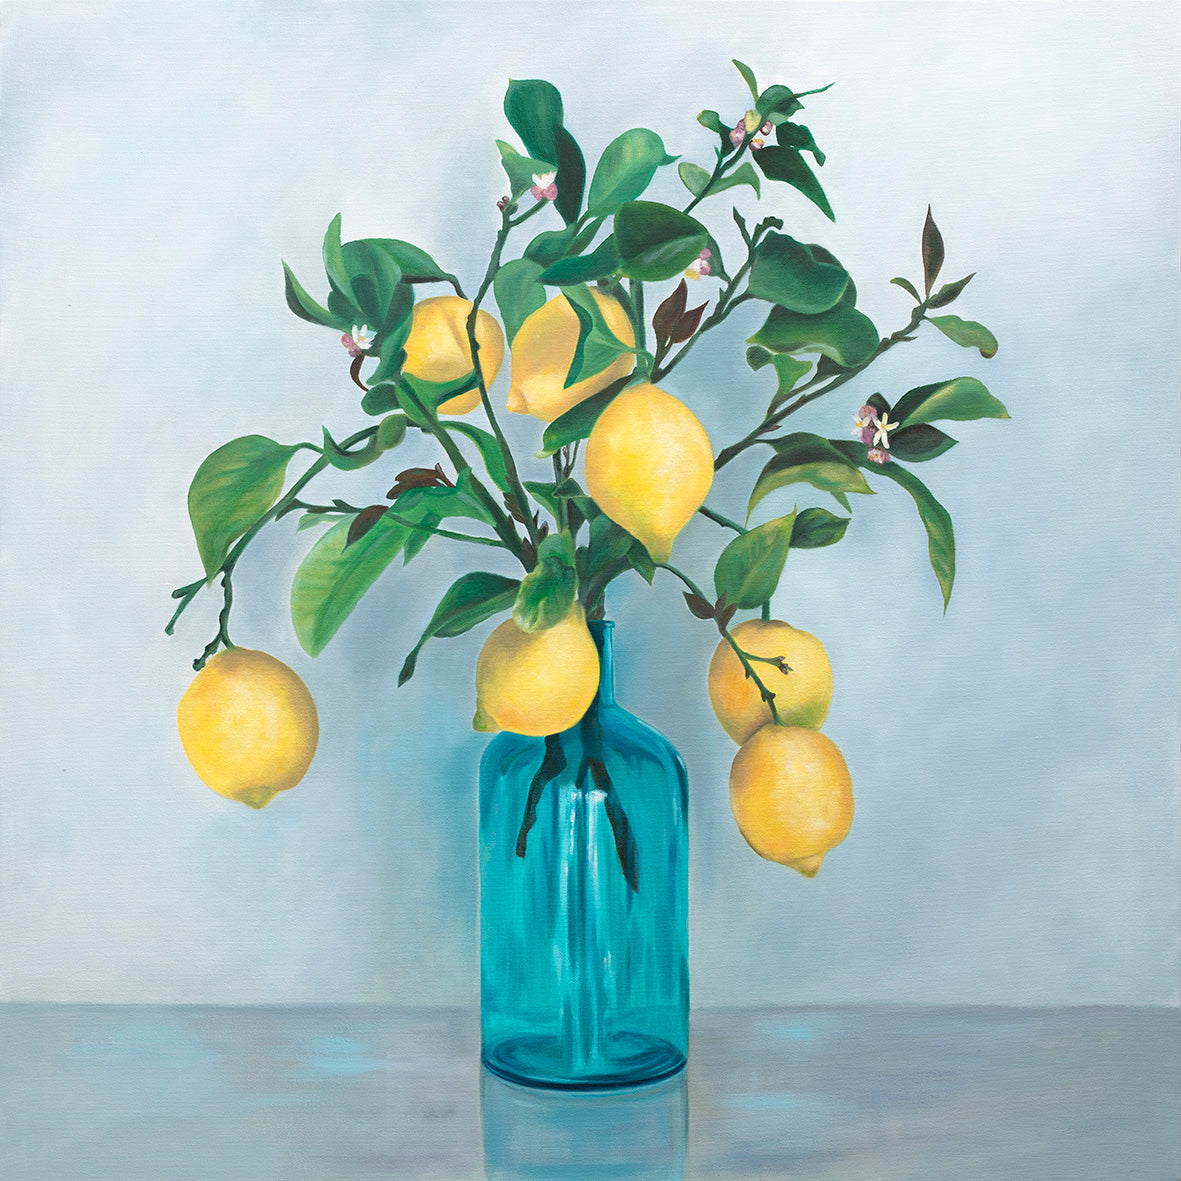 When Life Gives You Lemons - Fine Art Print